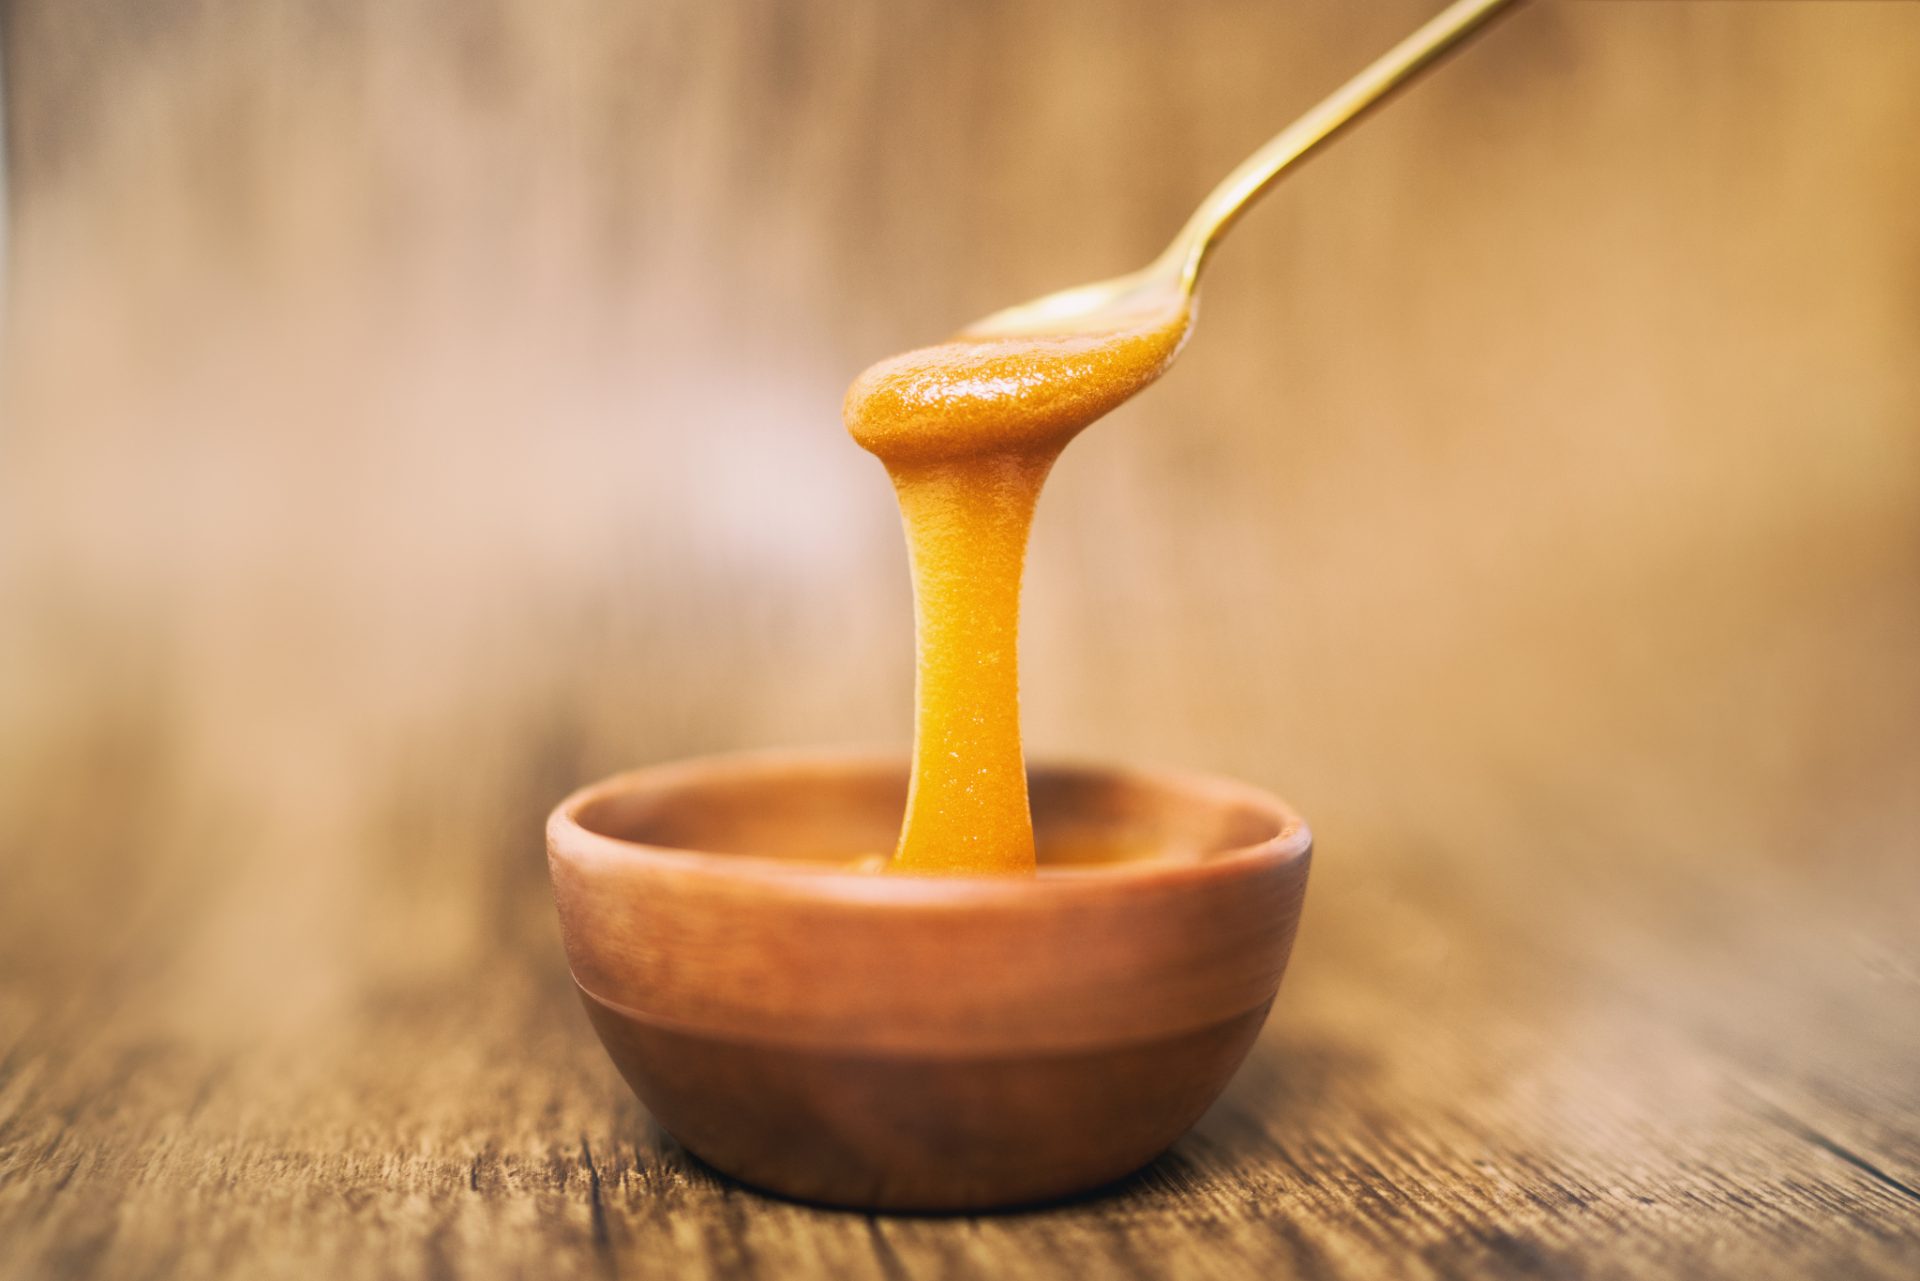 Facts About Honey - Manuka Honey